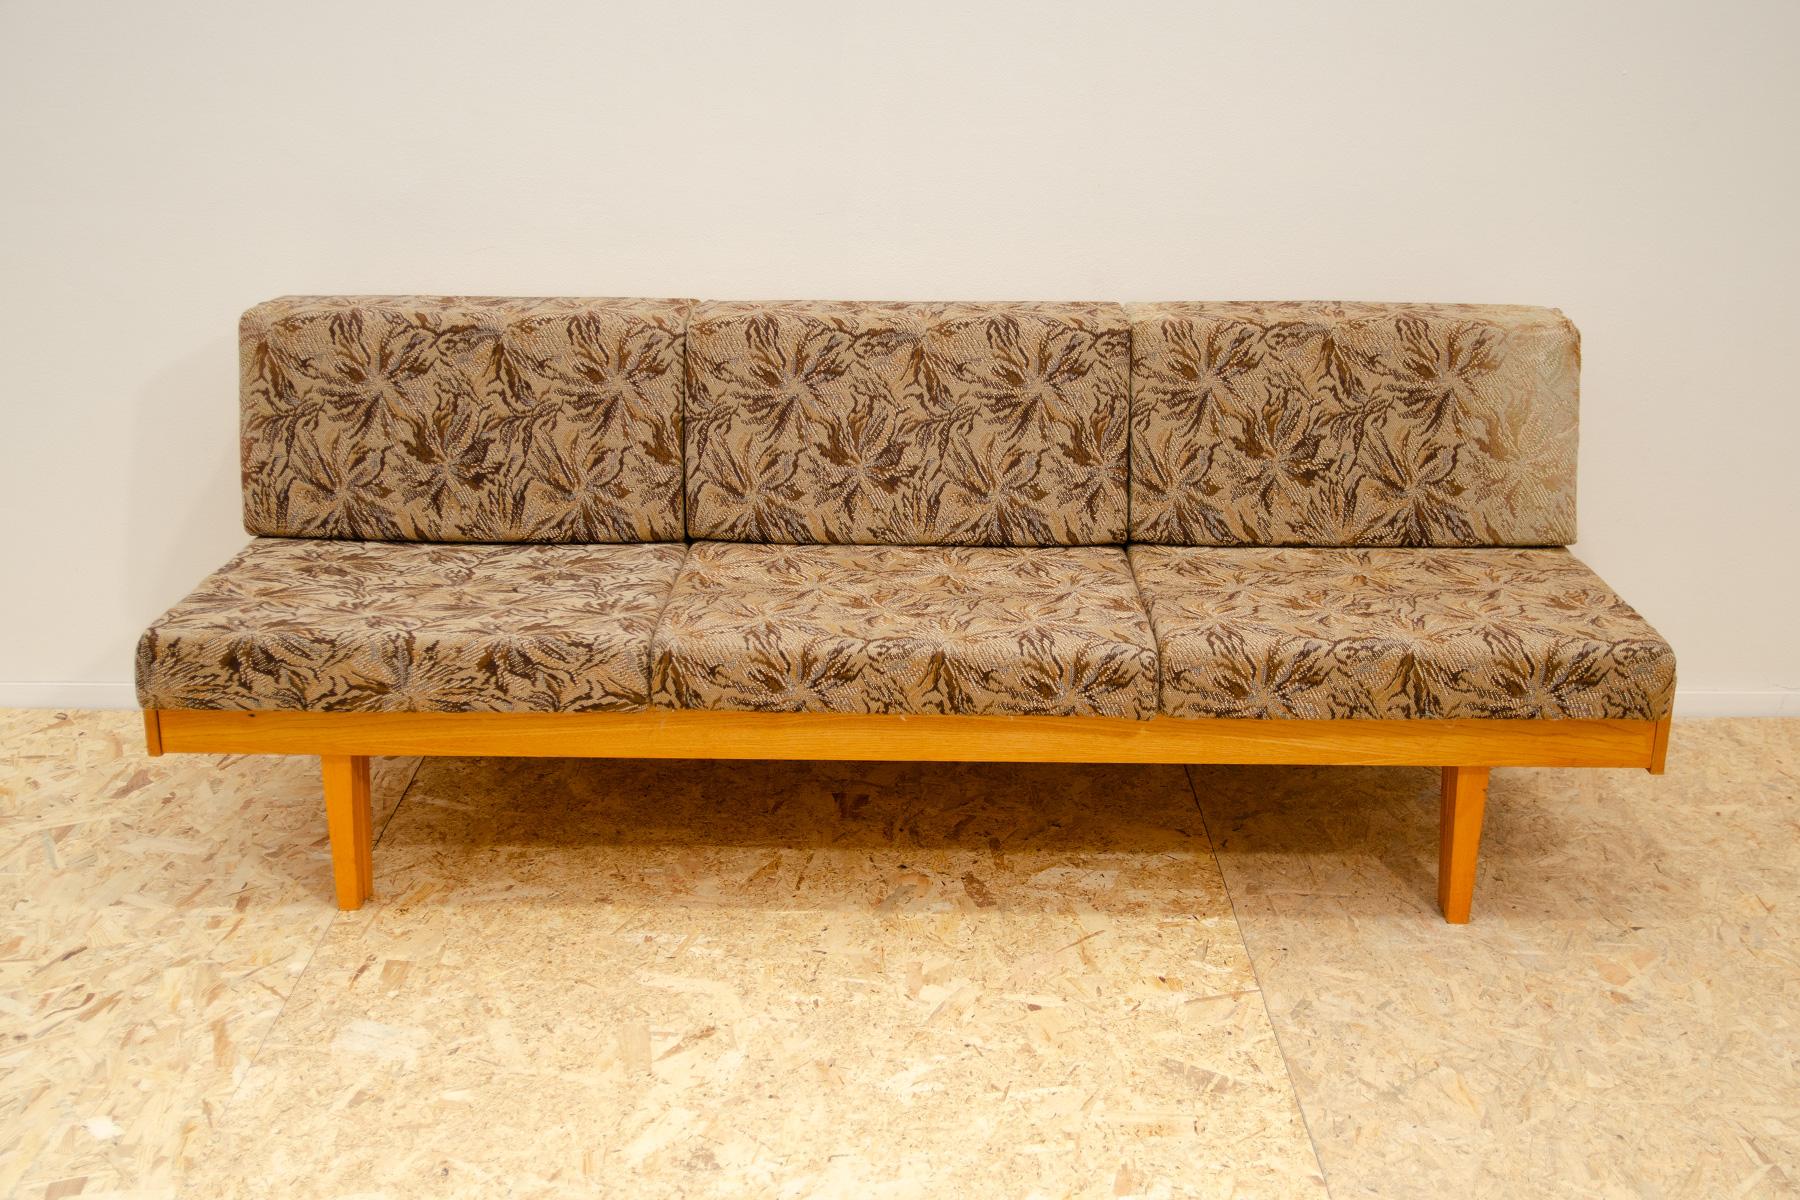 Sofabett aus der Mitte des Jahrhunderts im Stil von Hans Wegner, hergestellt in der ehemaligen Tschechoslowakei in den 1960er Jahren. MATERIAL: Buchenholz, Stoff. Das Sofa ist strukturell in sehr gutem Zustand, der Stoff ist von der Sonne an einigen